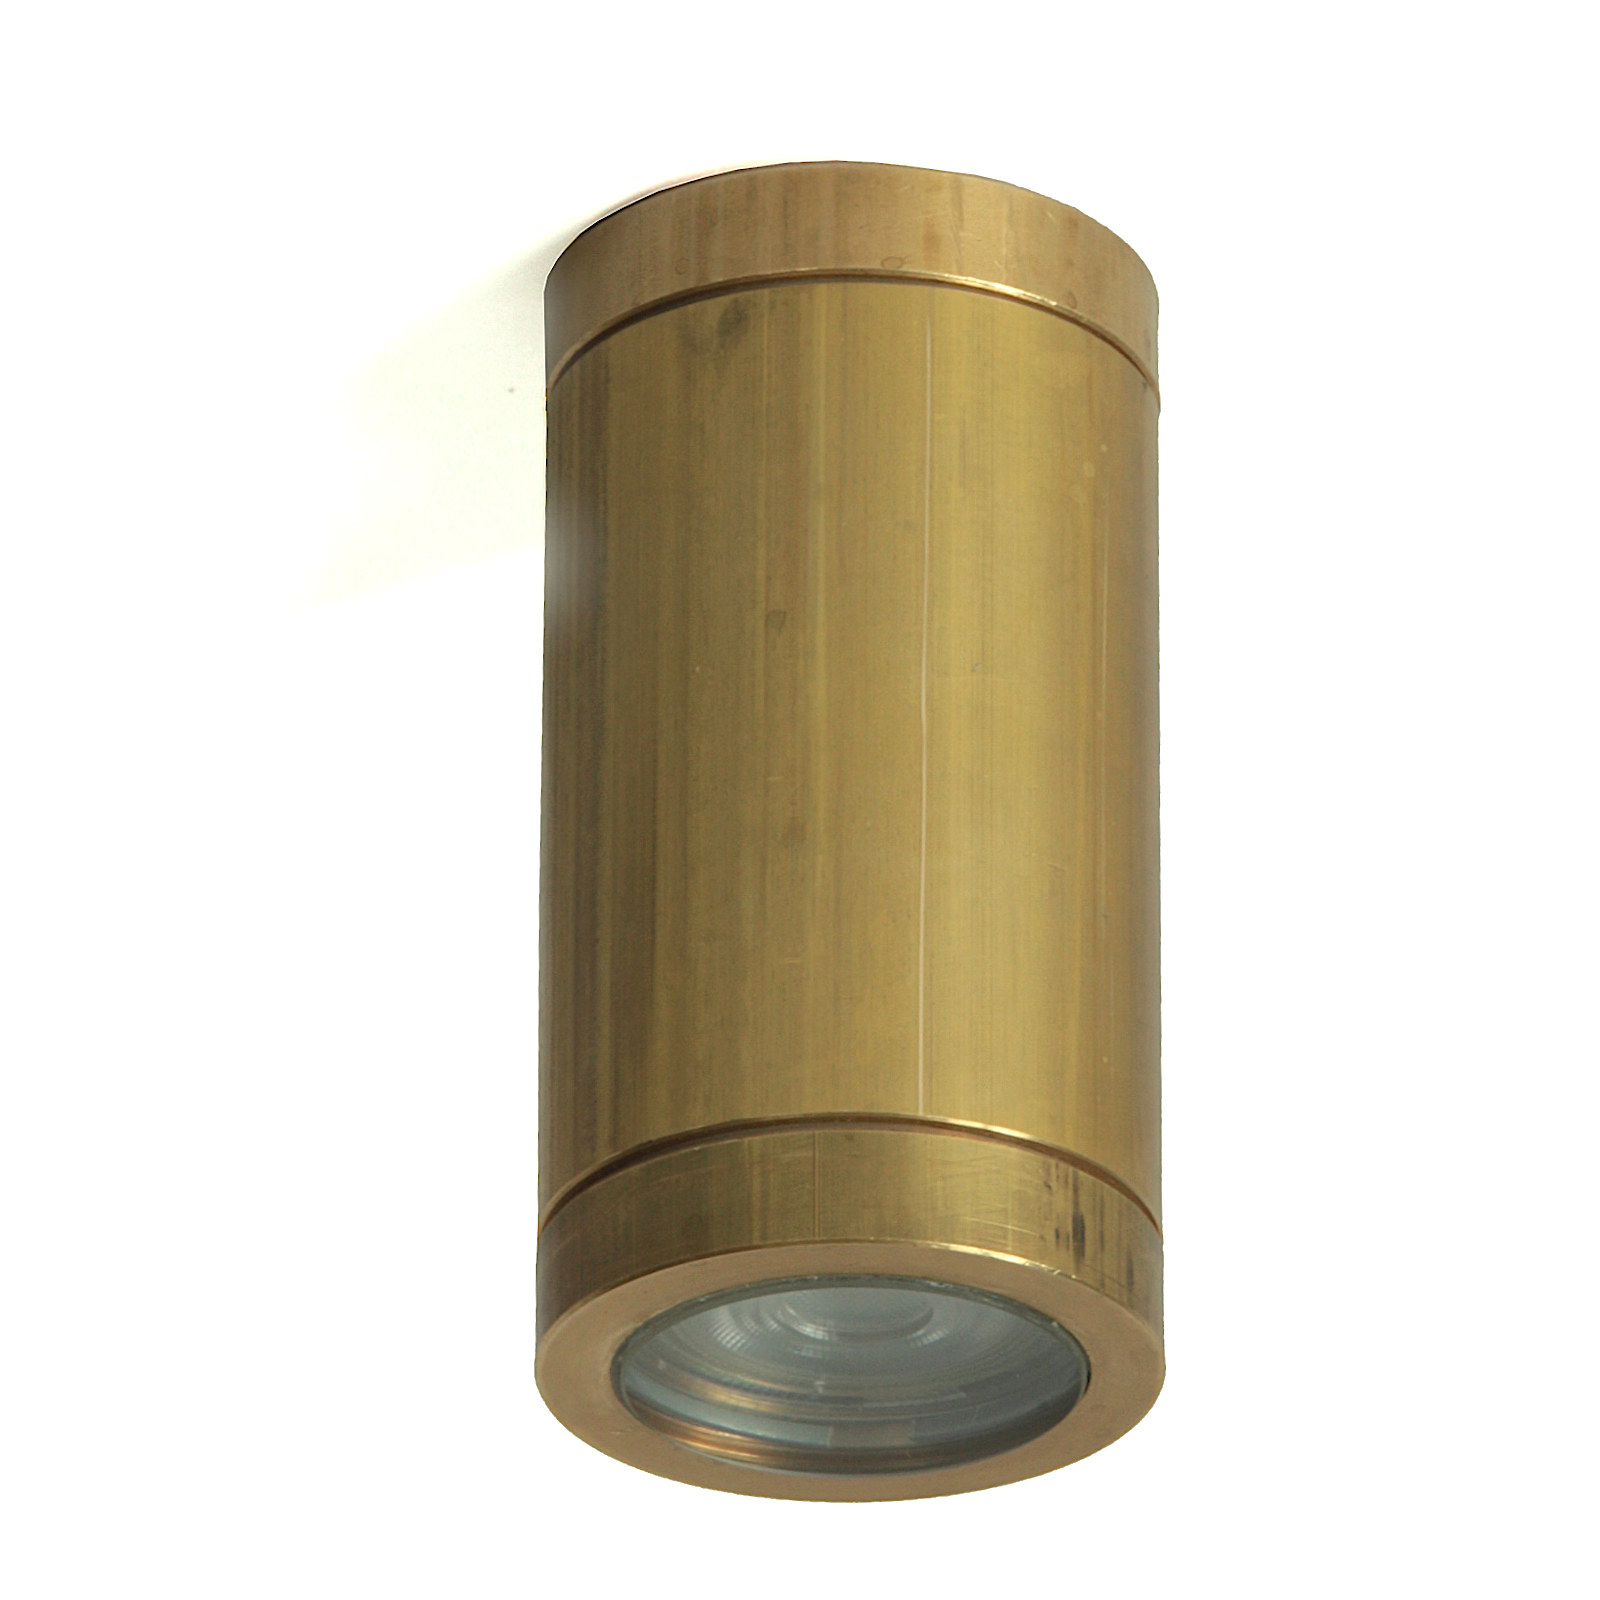 Brass Ceiling Spotlight Teres 1, Ø 60 mm: Messing Deckenstrahler Teres 1